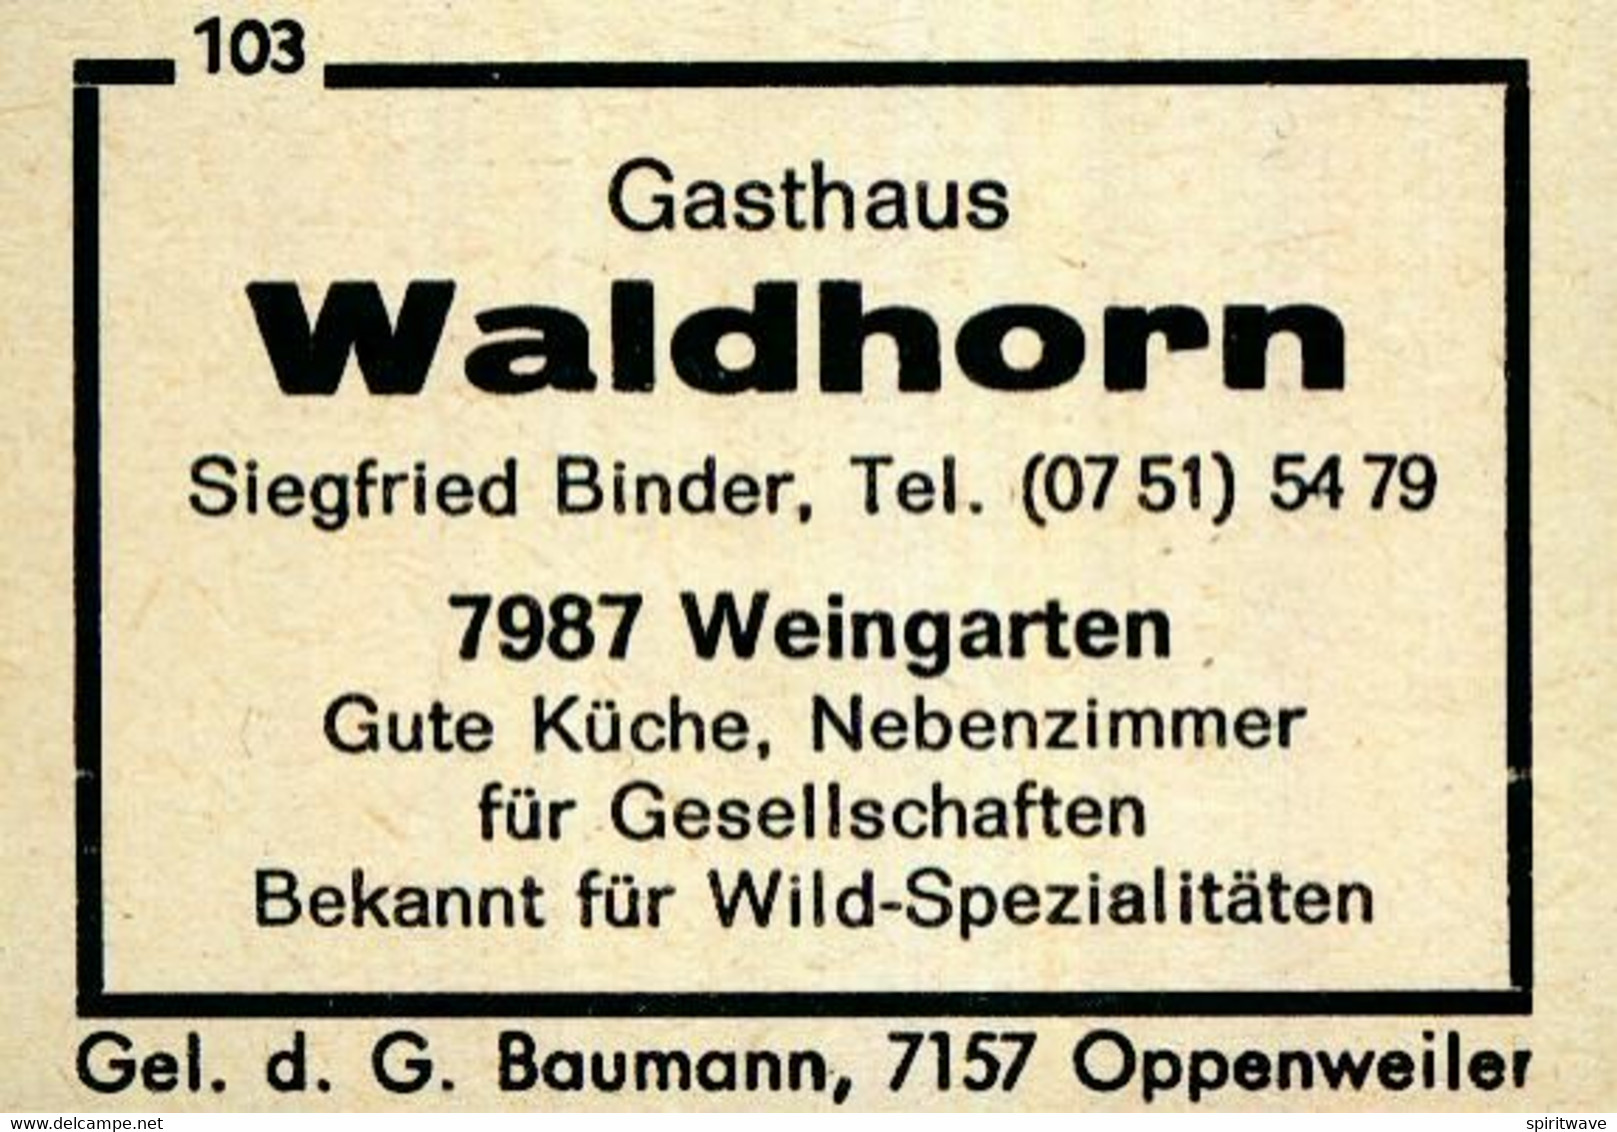 Matchbox labels - 1 altes Gasthausetikett, Gasthaus Waldhorn, Siegfried  Binder, 7987 Weingarten #1803